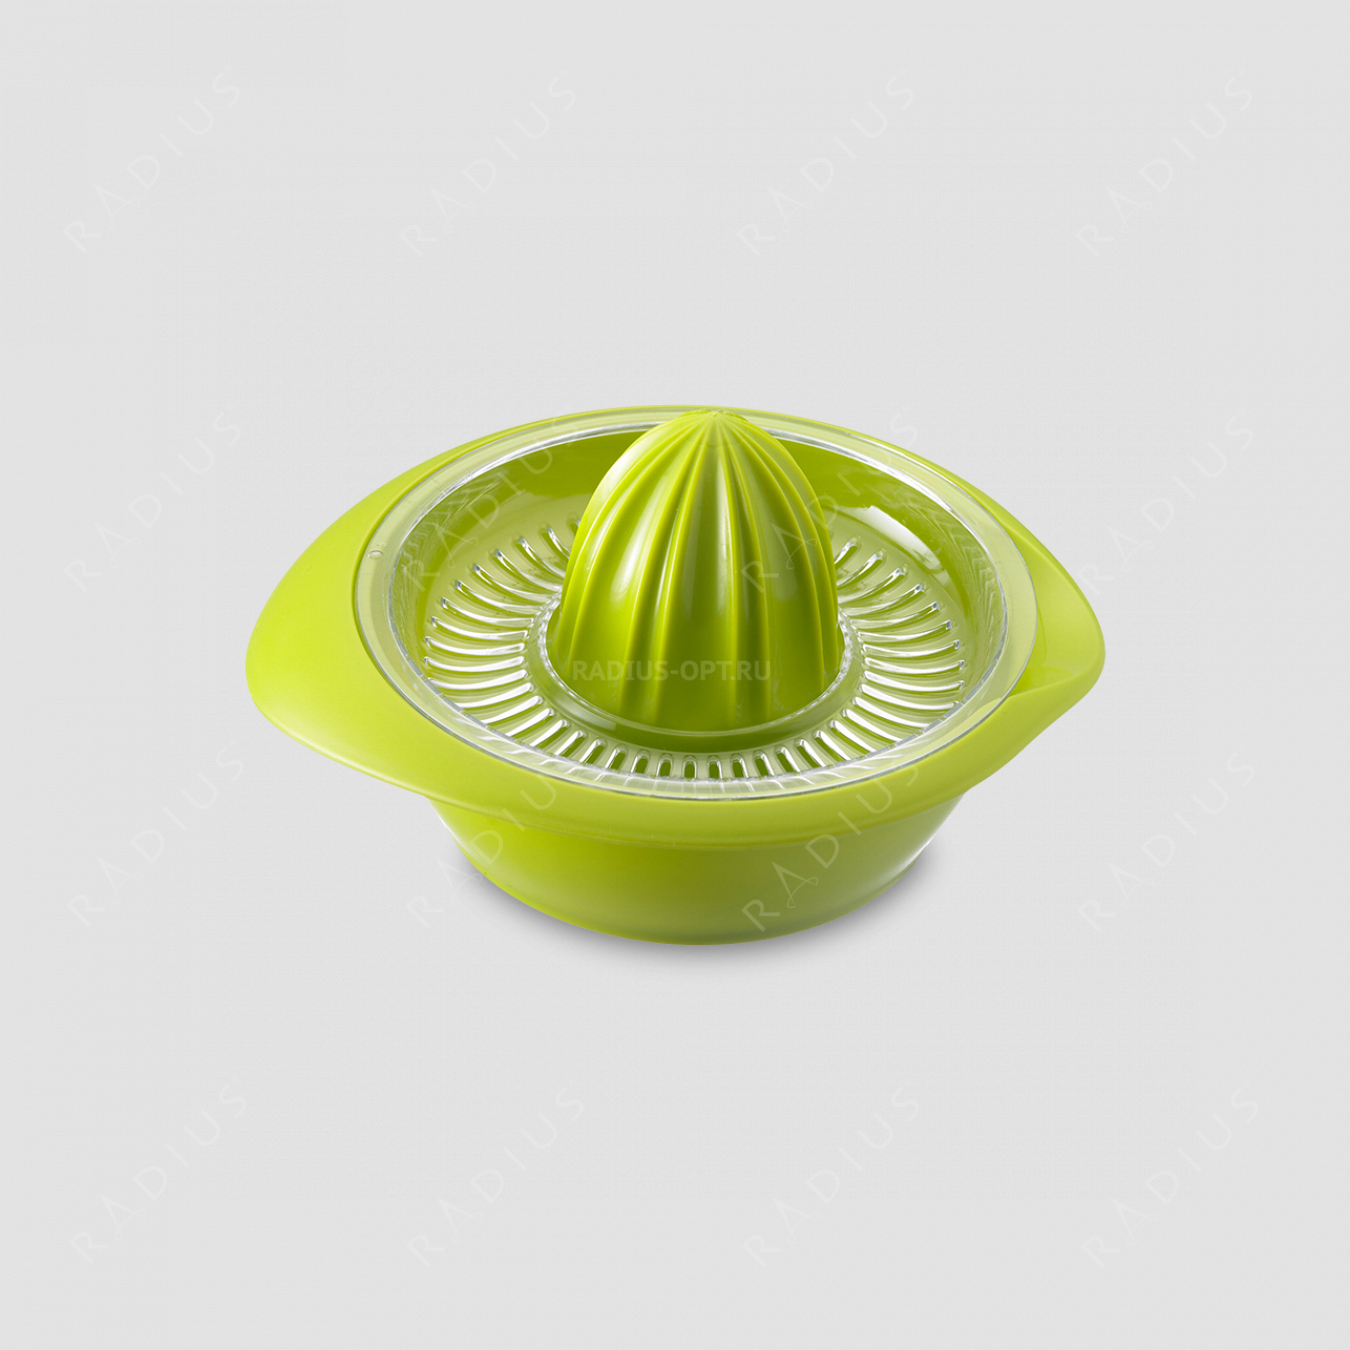 Ручная соковыжималка пластиковая для цитрусовых с сеткой, 200 мл. цвет зеленый, серия Plastic tools, Westmark, Германия